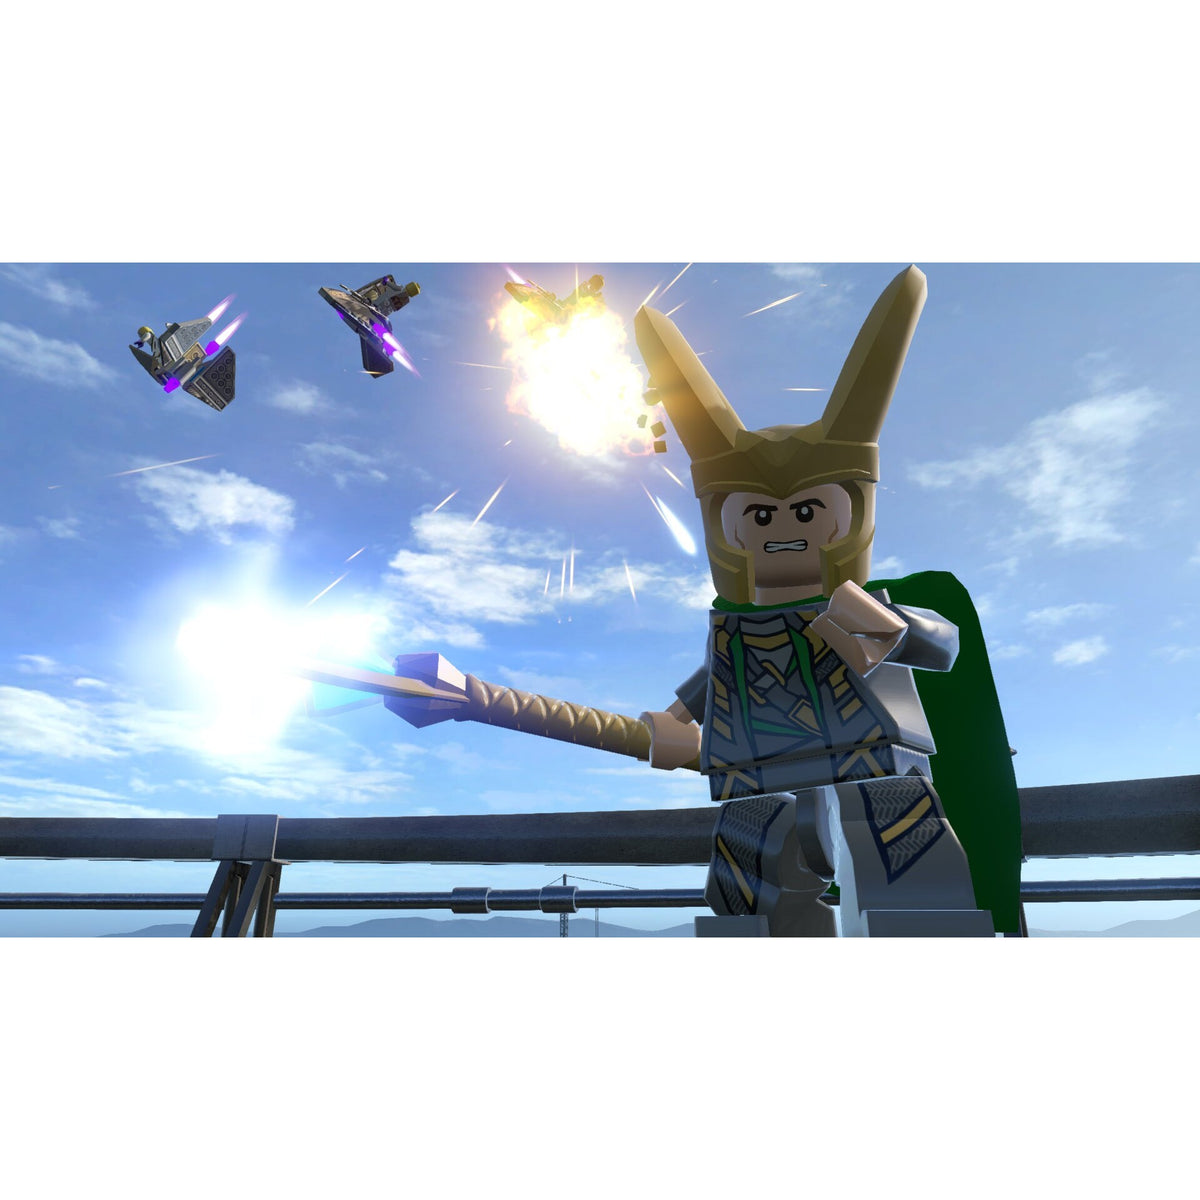 Lego Marvel&#39;s Avengers (5051892195119)